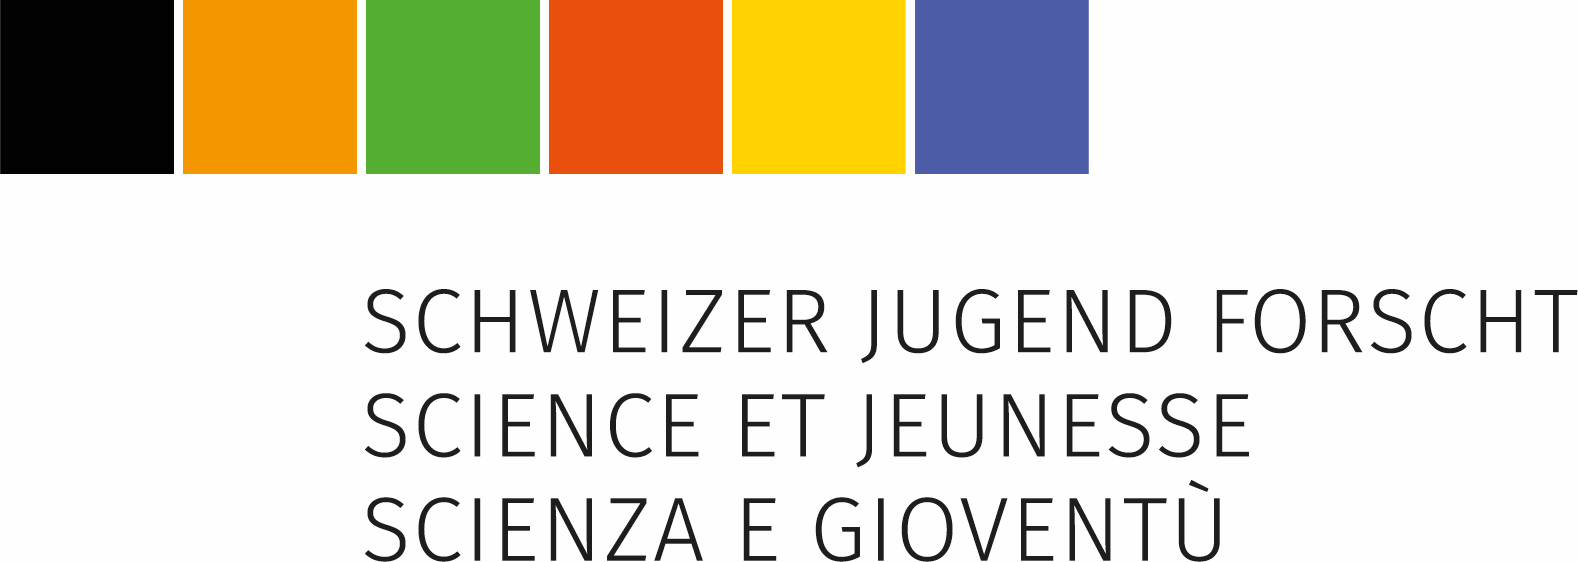 Stiftung Schweizer Jugend forscht